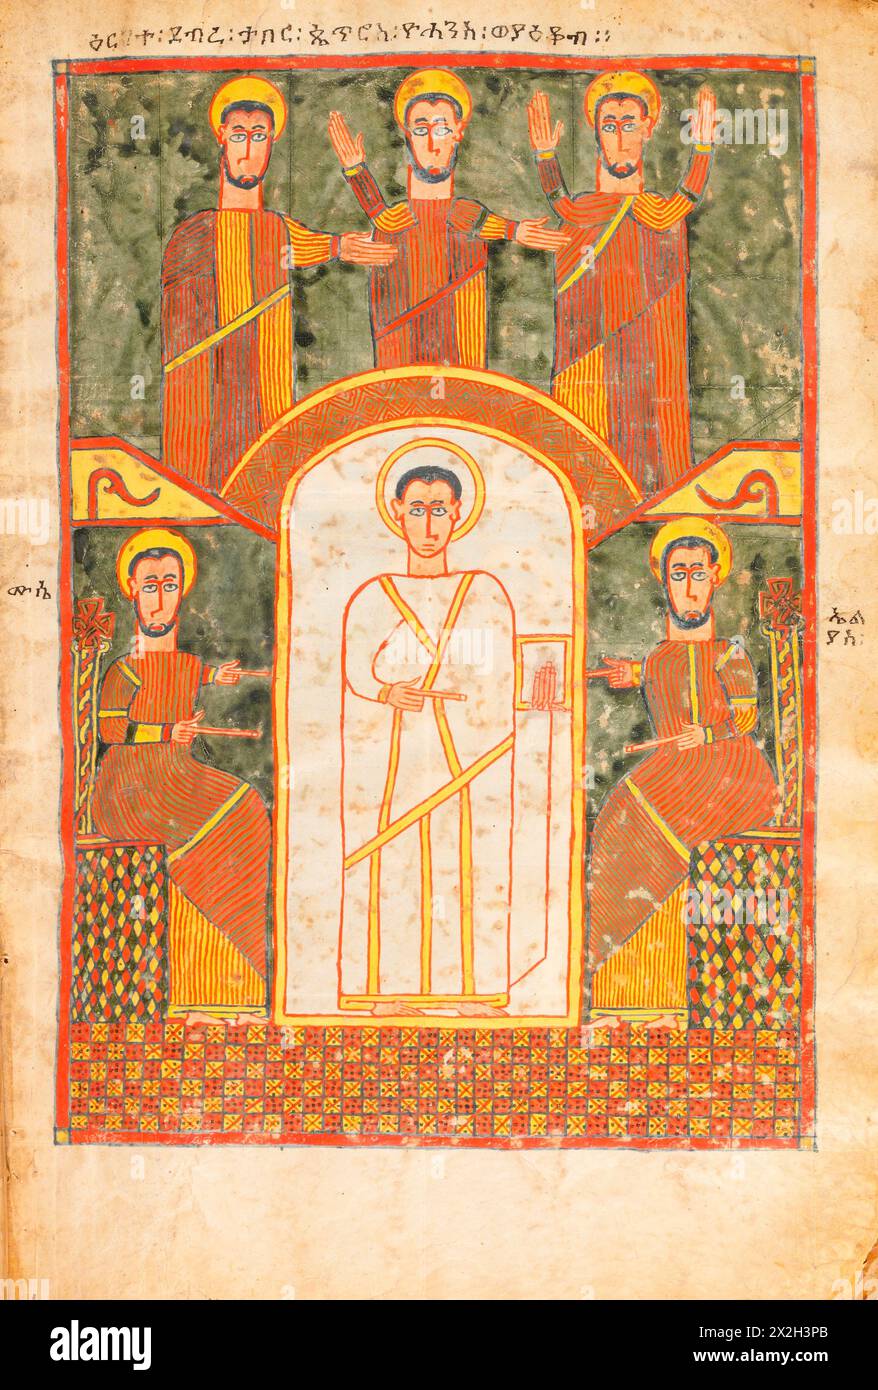 Evangile illuminé - peuples Amhara - la Transfiguration du Christ - fin du XIVe au début du XVe siècle Banque D'Images